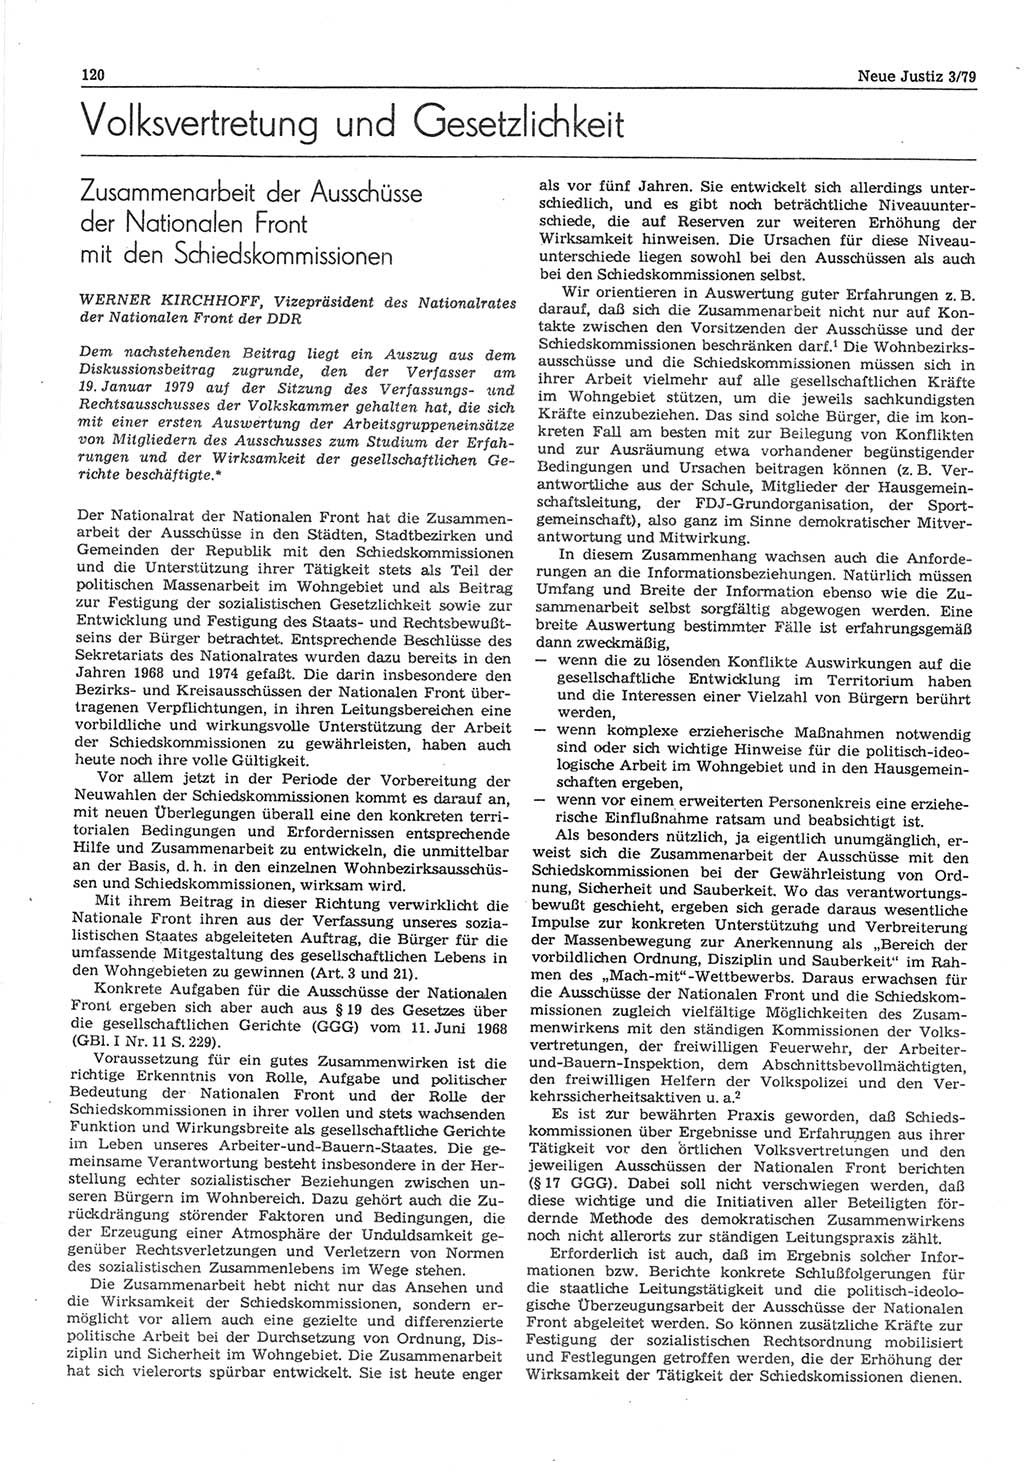 Neue Justiz (NJ), Zeitschrift für sozialistisches Recht und Gesetzlichkeit [Deutsche Demokratische Republik (DDR)], 33. Jahrgang 1979, Seite 120 (NJ DDR 1979, S. 120)